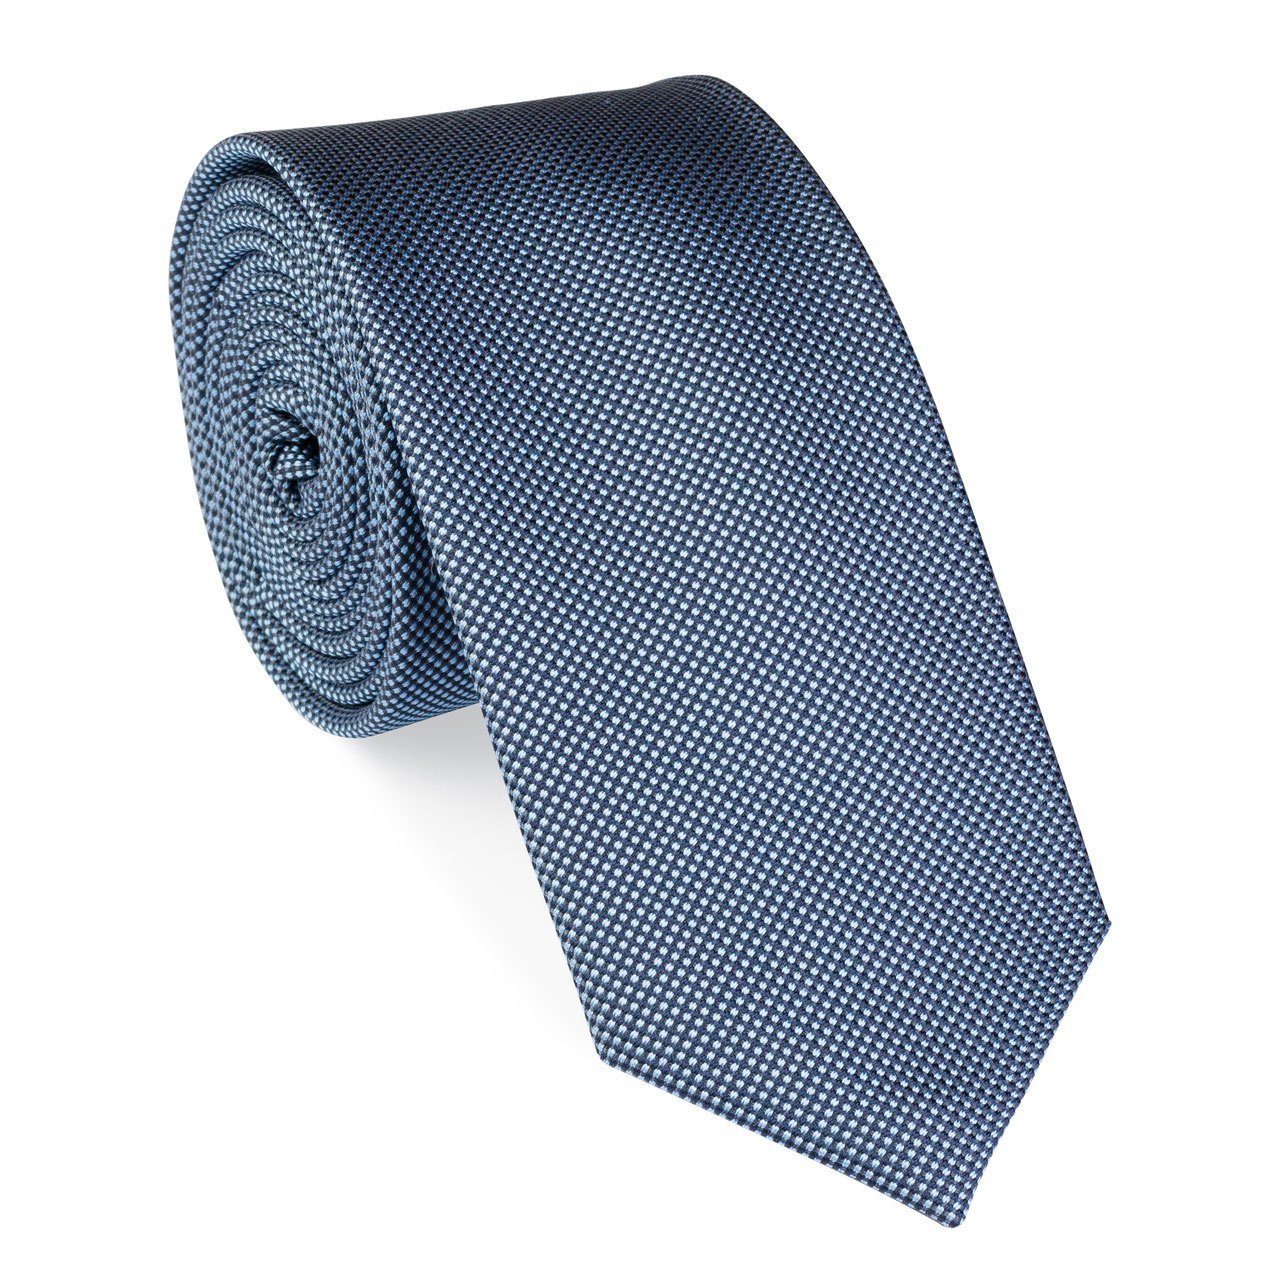 UNA Krawatte Krawatte - Perla - 6cm - dunkelblau Seide (17)